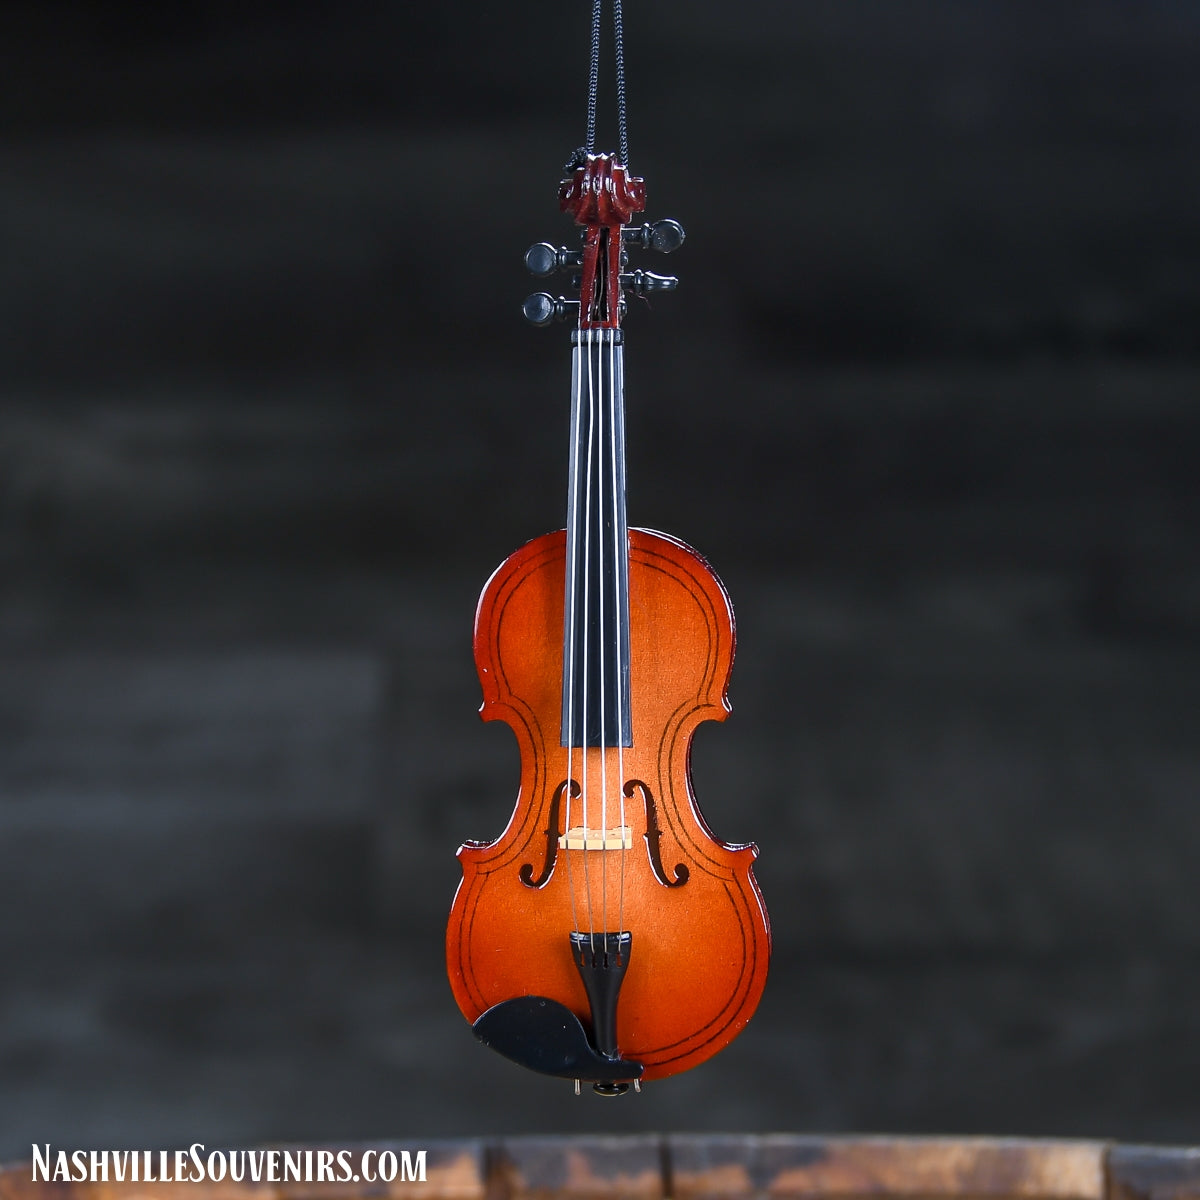 Replica Violin Ornament